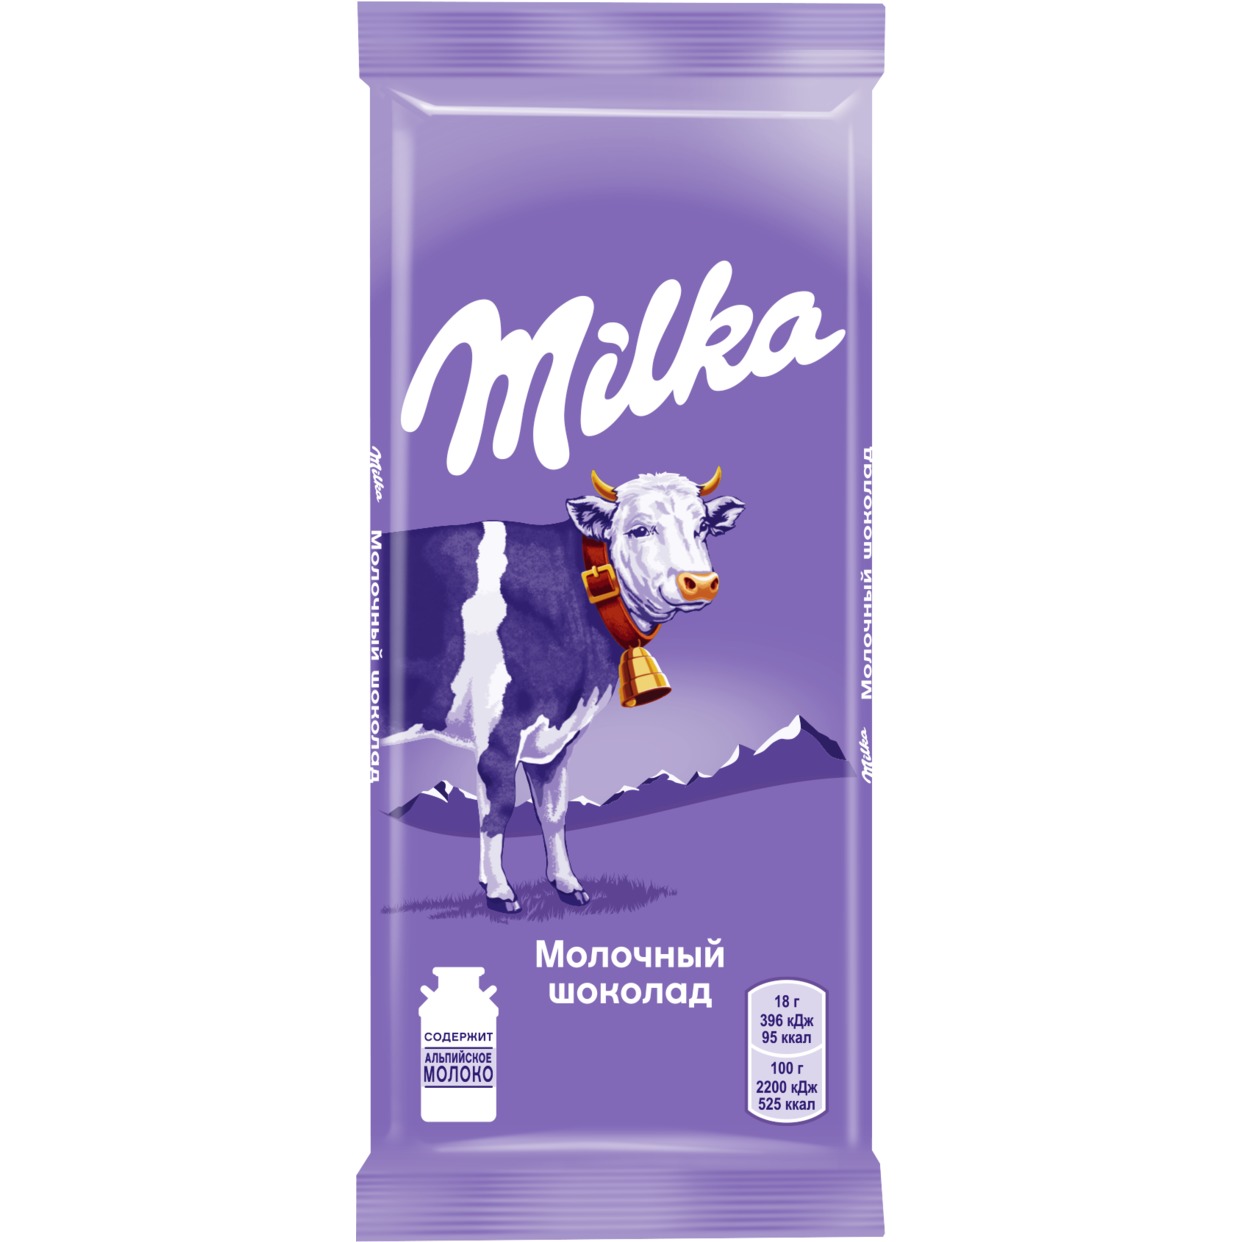 MILKA Шоколад молочный 90г по акции в Пятерочке